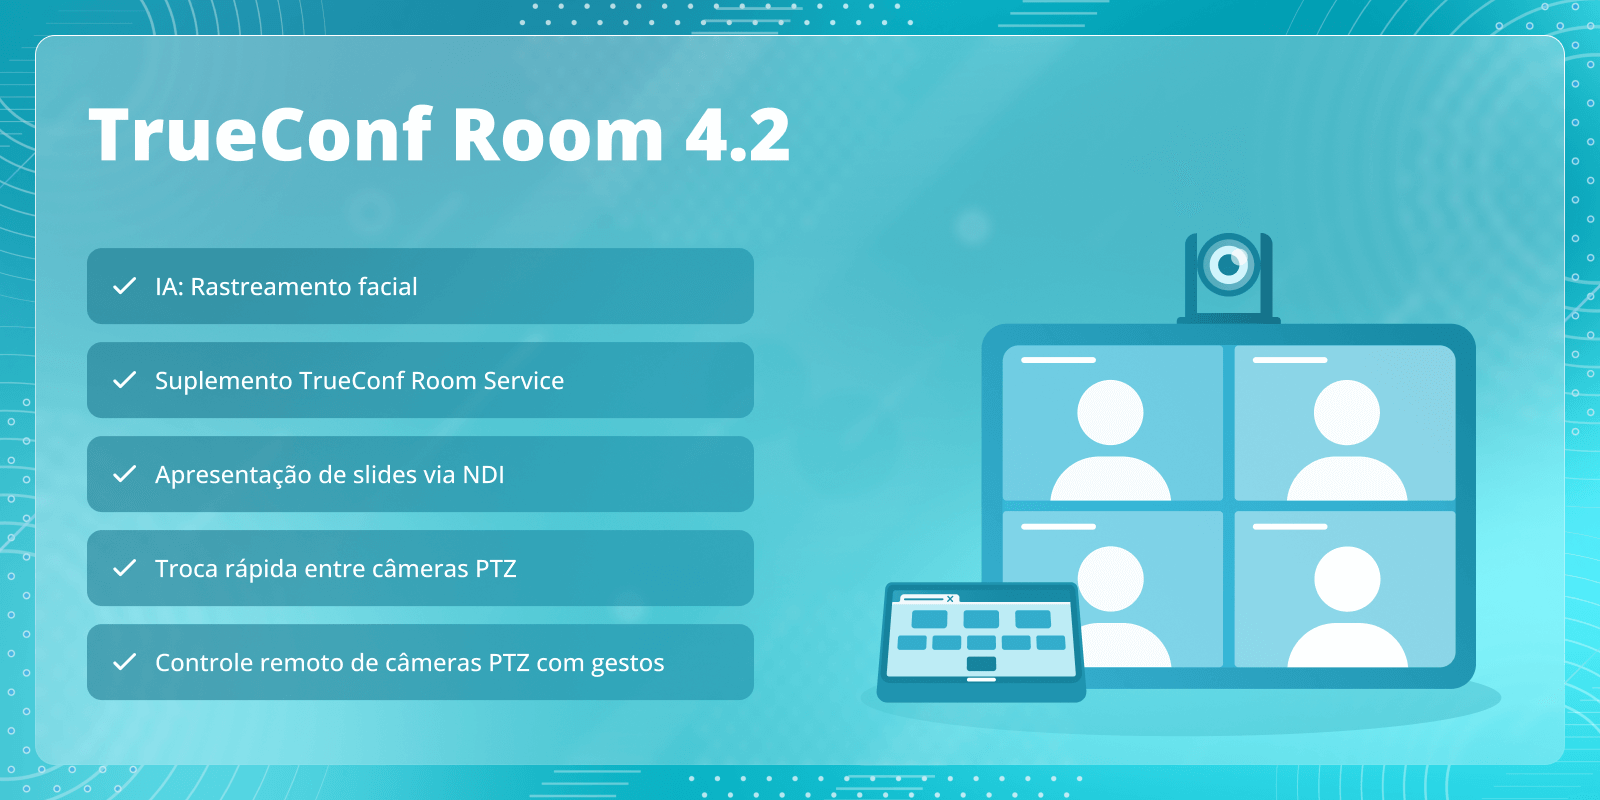 TrueConf Room 4.2: suplemento TrueConf Room Service e rastreamento facial 6